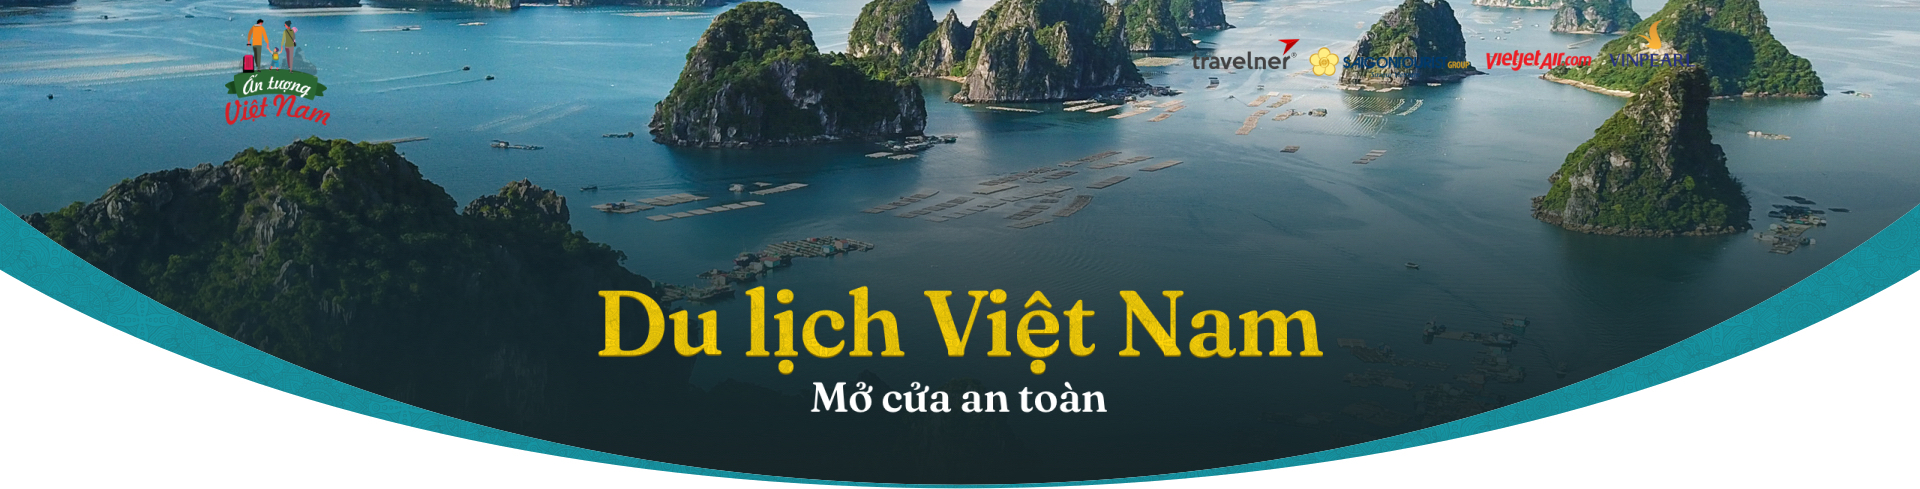 Ấn tượng Việt Nam